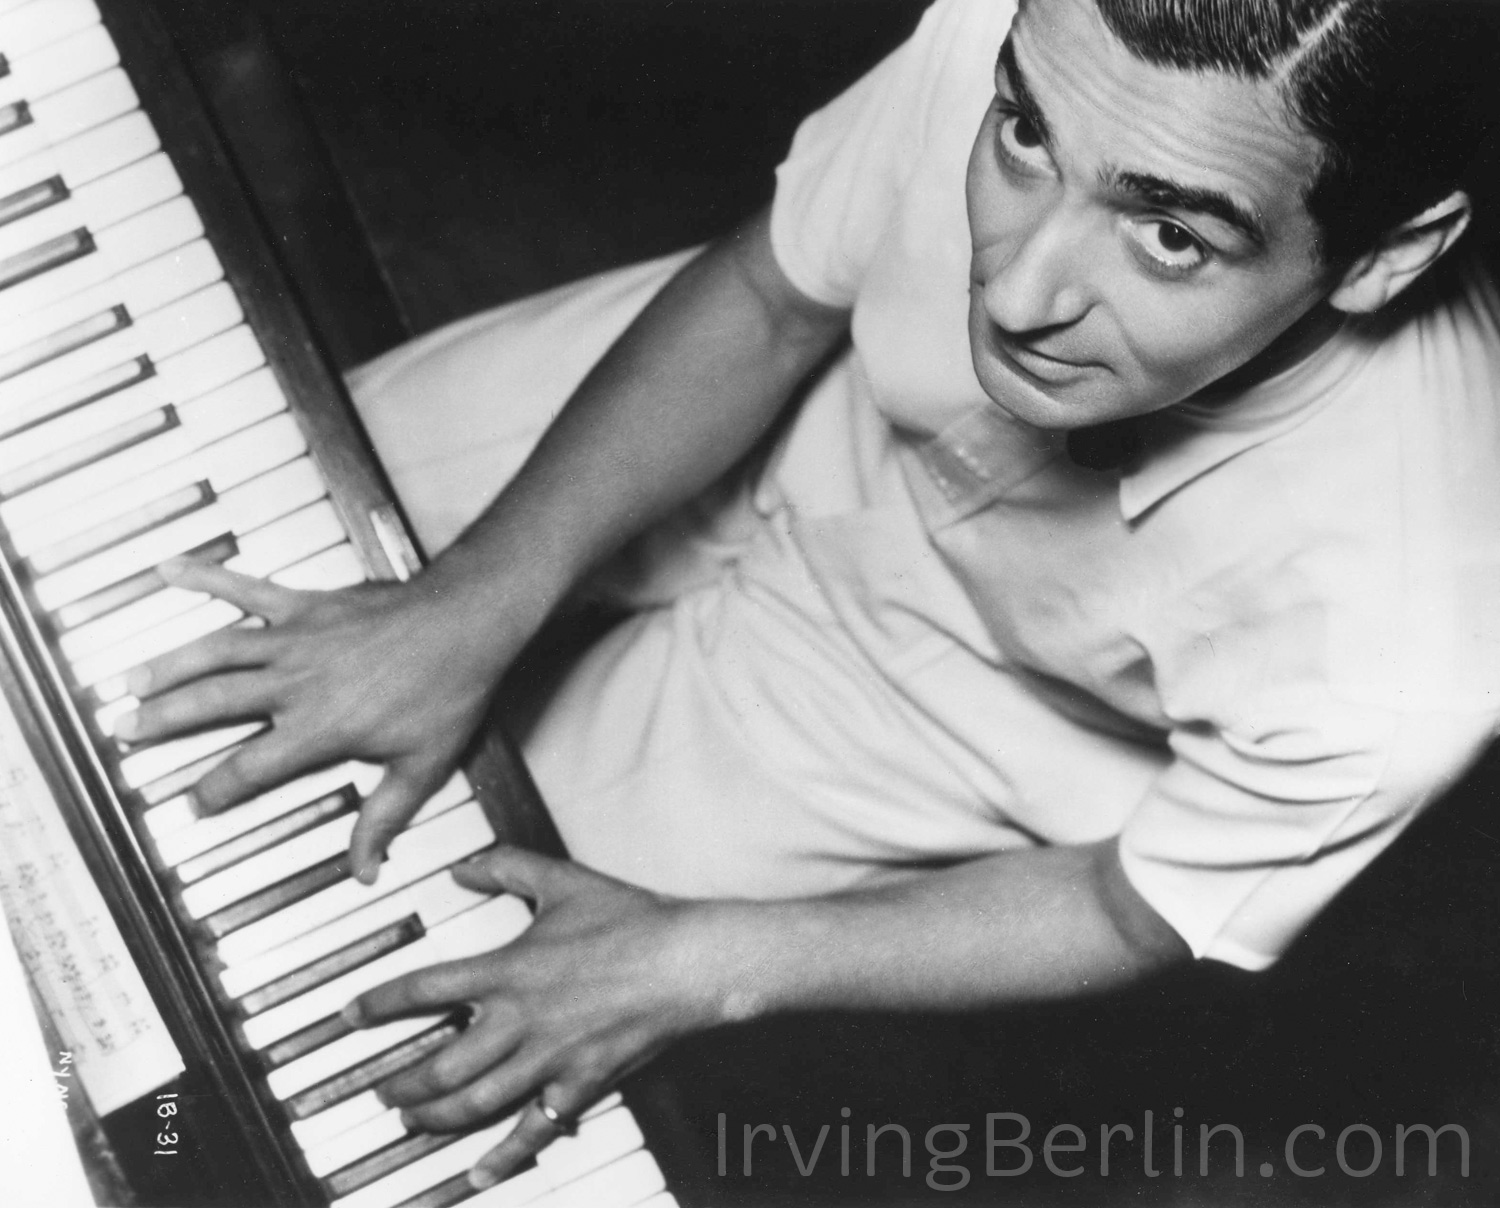 Irving Berlin at piano